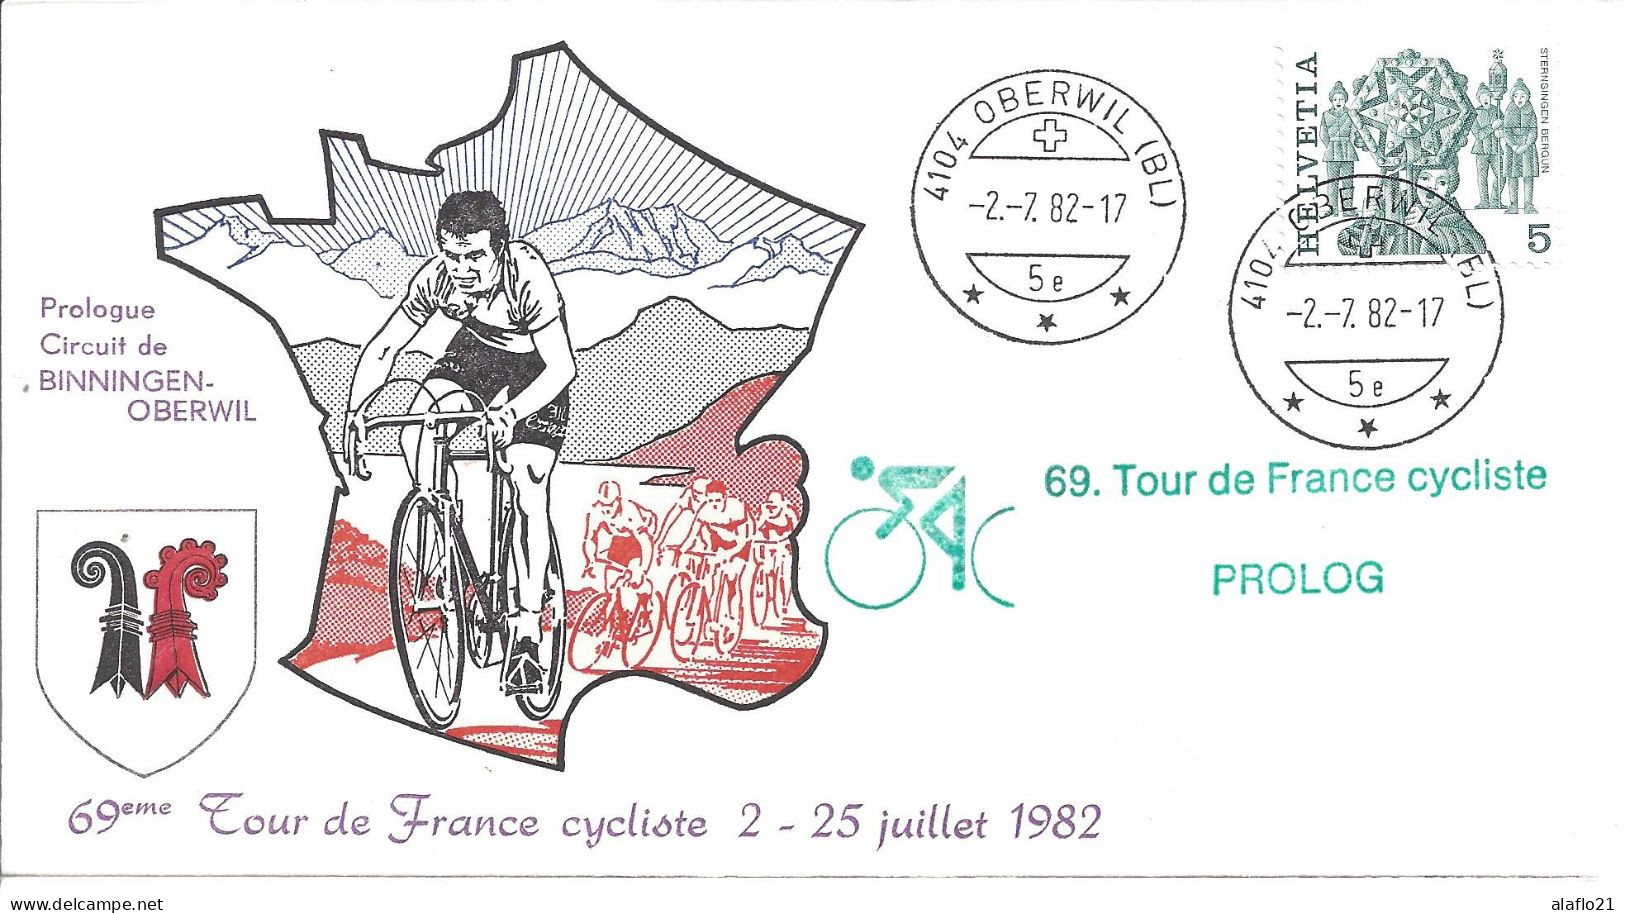 ENVELOPPE OFFICIELLE TOUR De FRANCE CYCLISTE 1982 - PROLOGUE - BINNINGEN-OBERWIL - Commemorative Postmarks